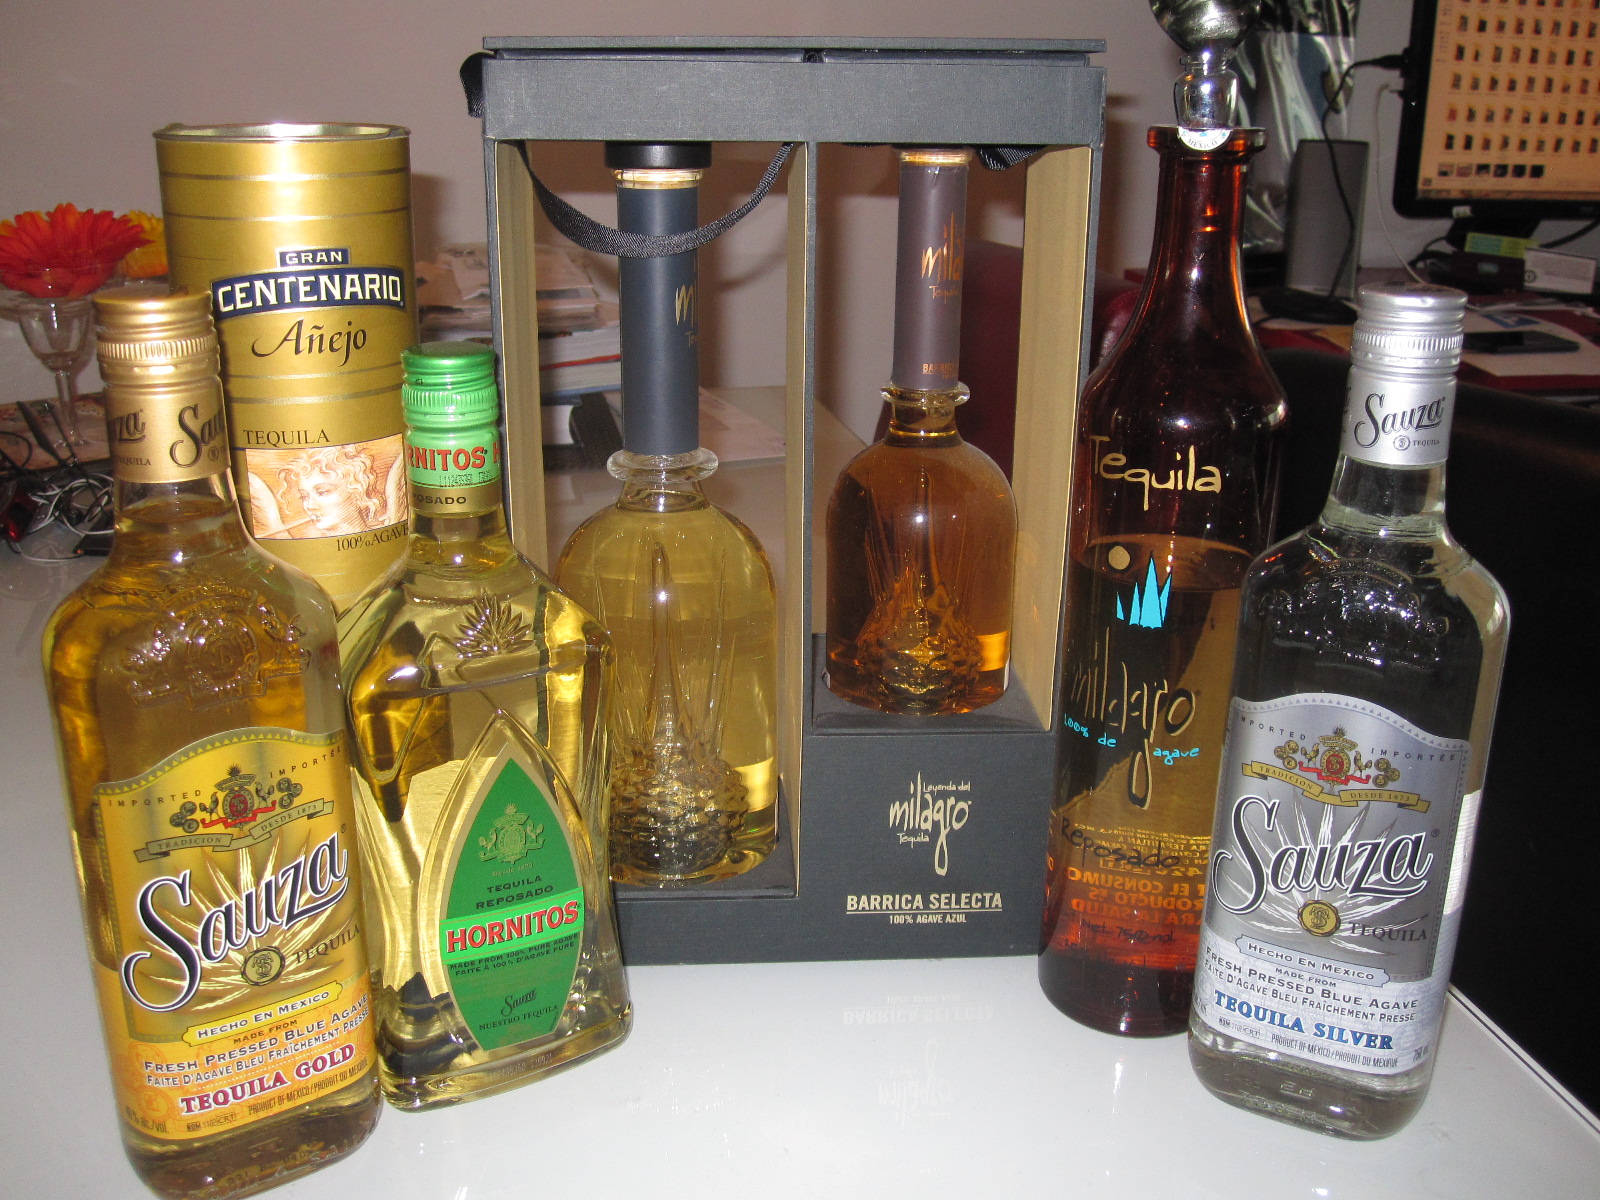 Hornitostequila E Outras Tequilas Mexicanas Diferentes. Papel de Parede